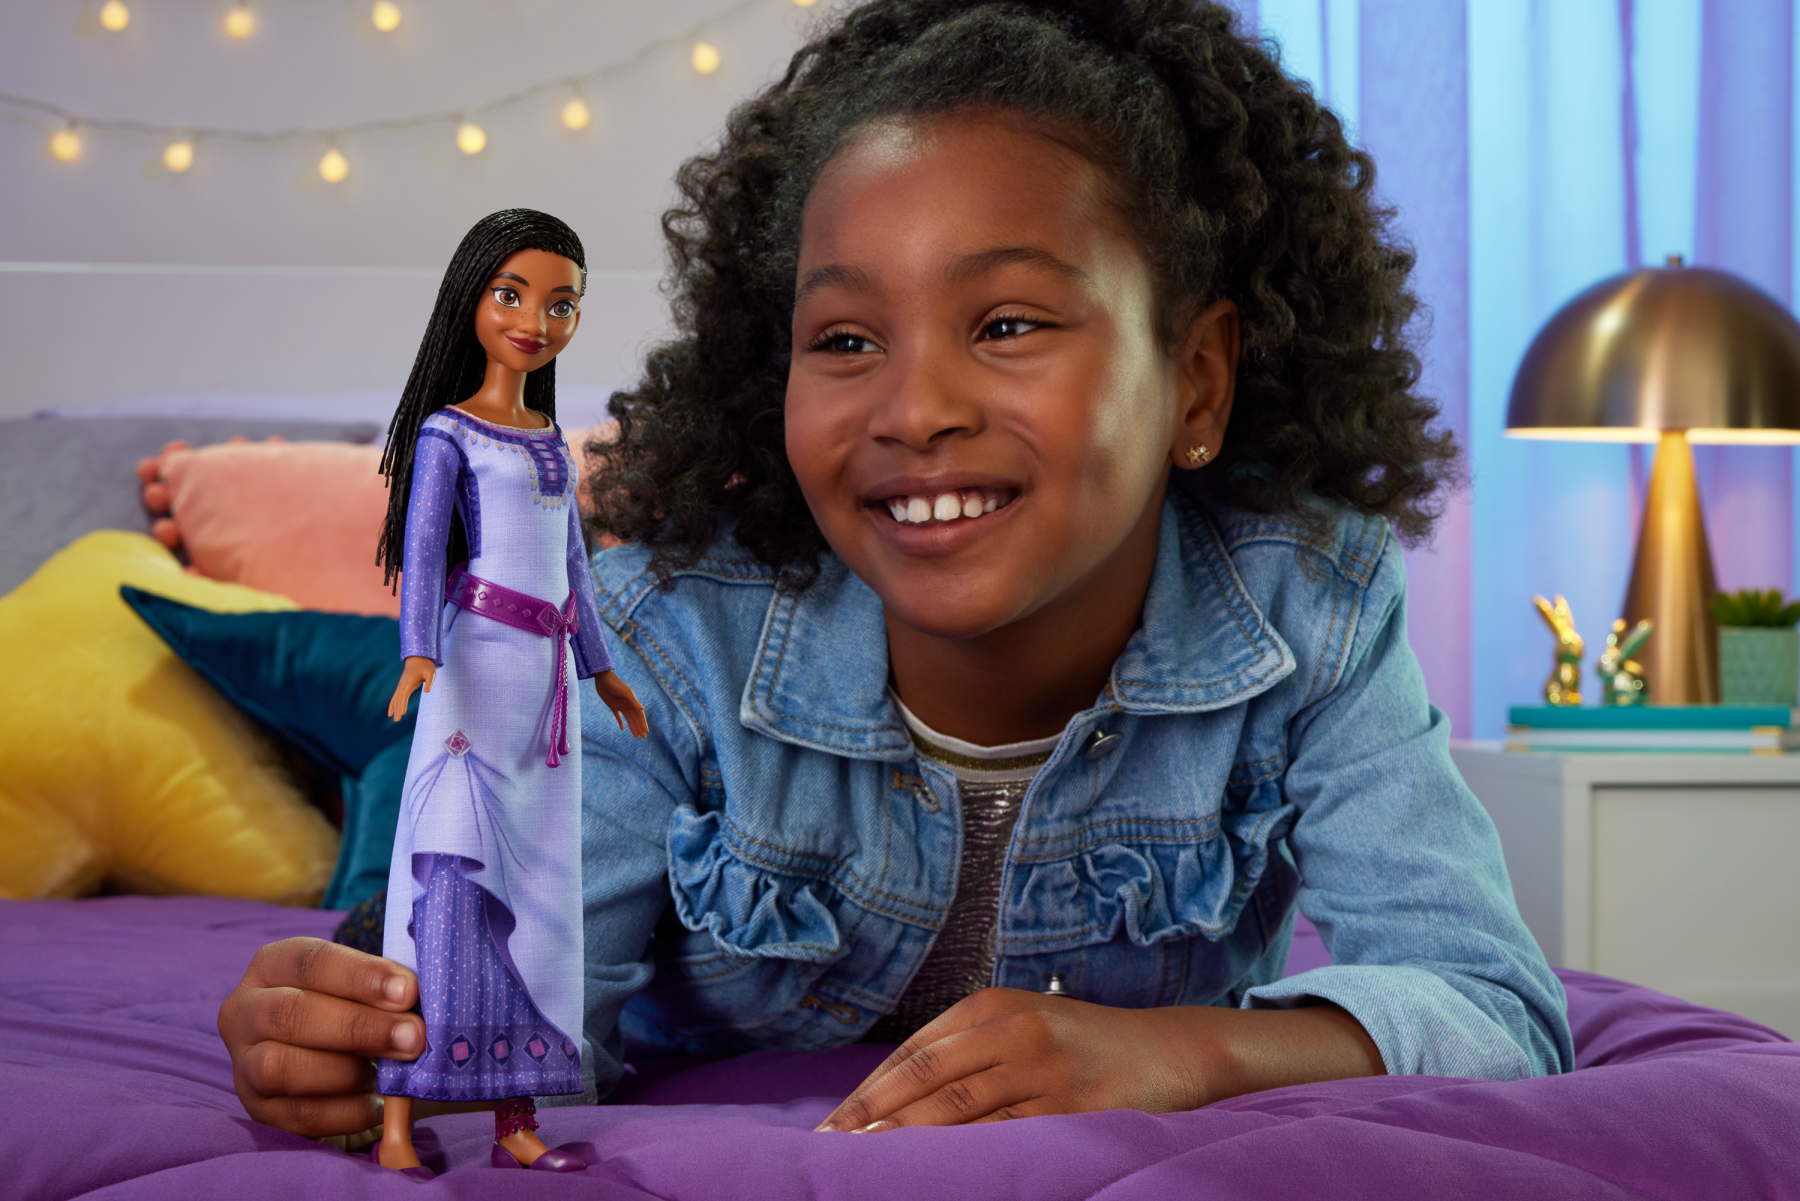 Disney Wish - Asha Di Rosas, Bambola Snodata Con Capelli Intrecciati e Accessori - Disney